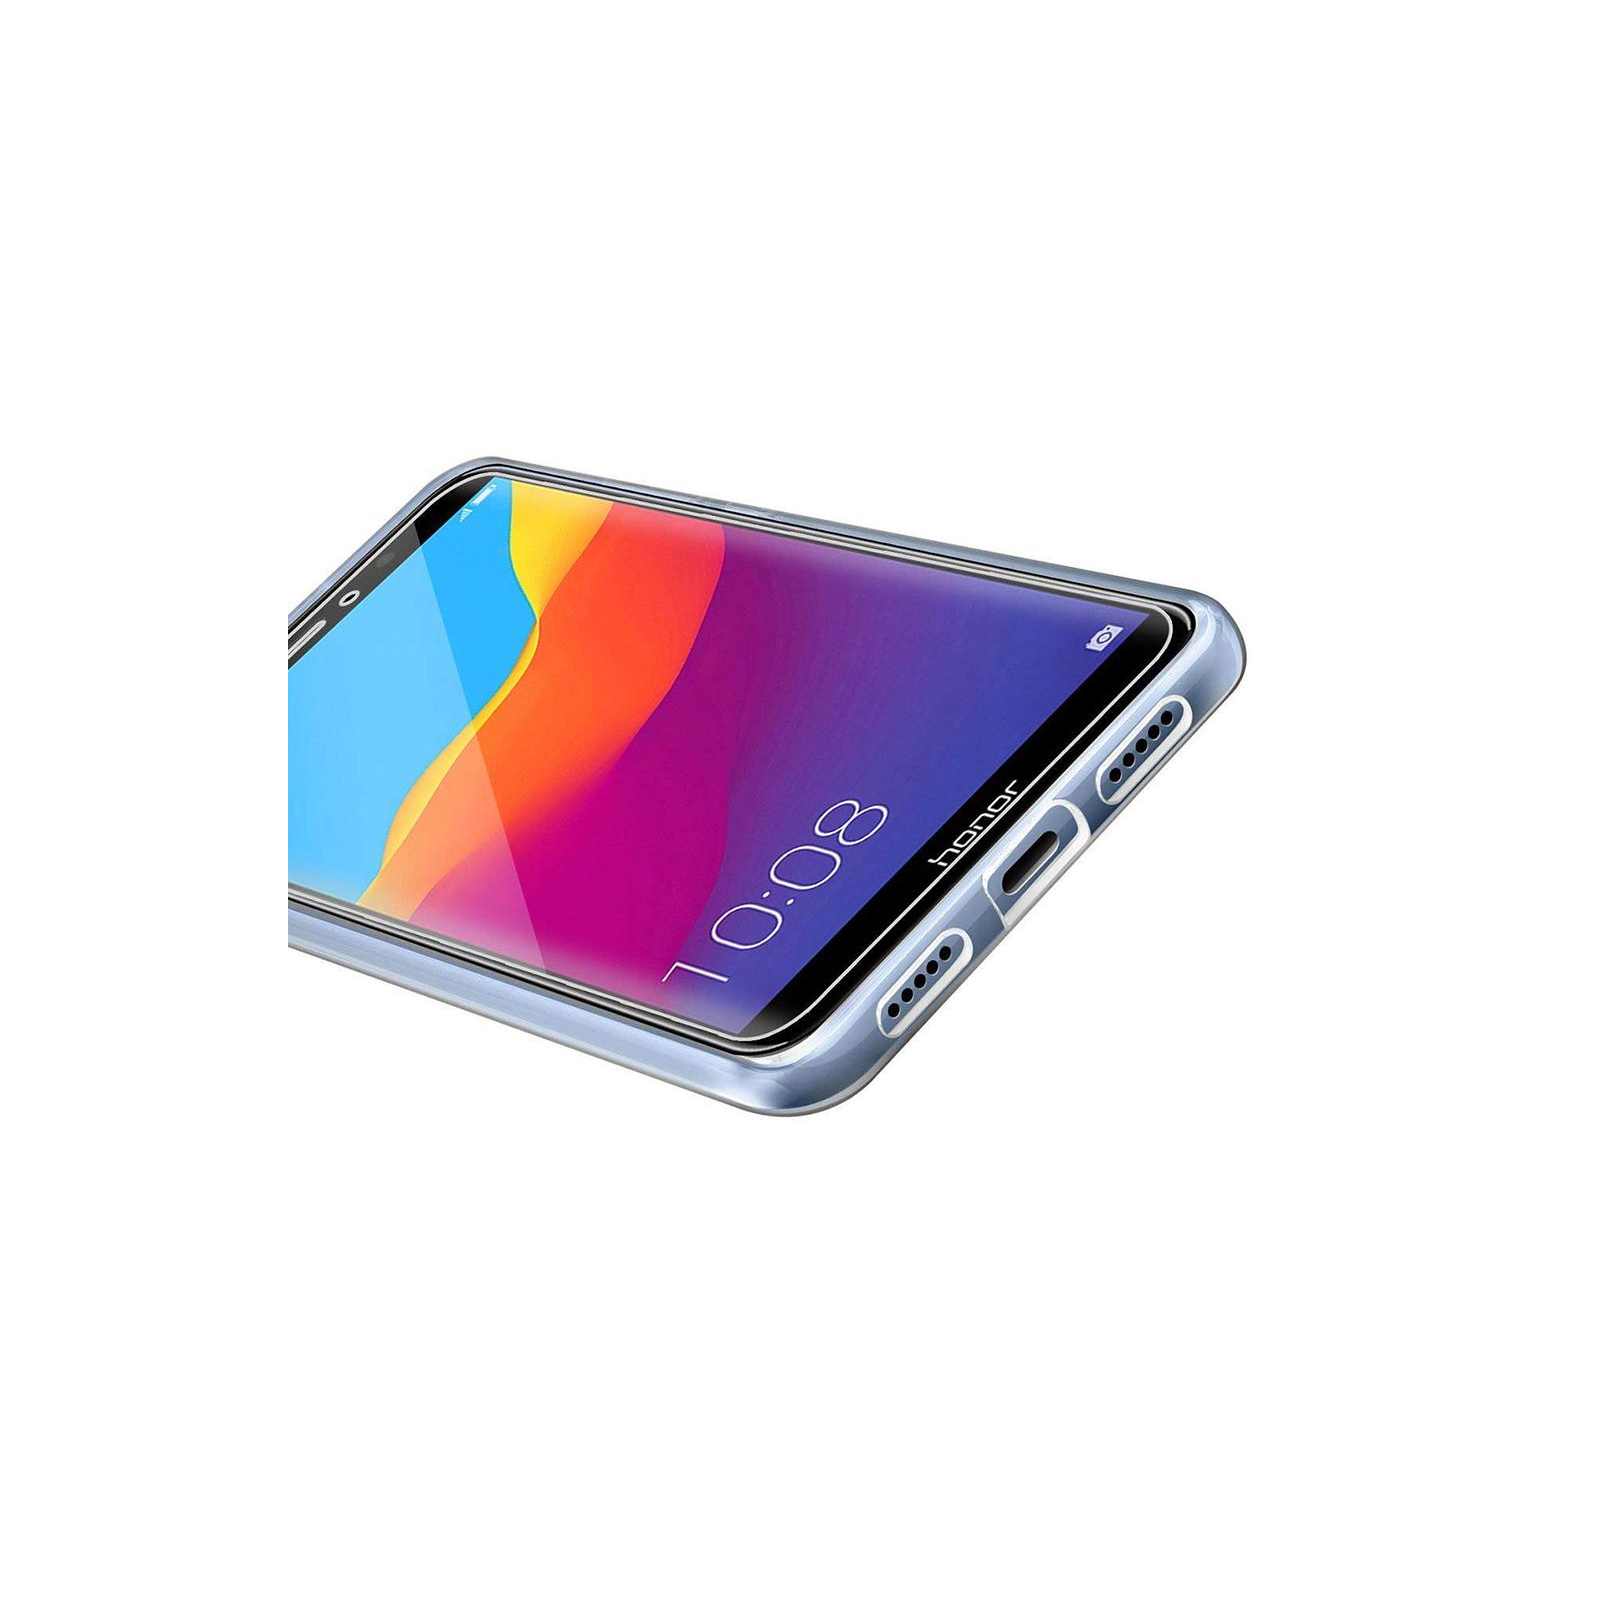 Чехол для мобильного телефона Laudtec для Huawei Y6 2018 Clear tpu (Transperent) (LC-HY62018T) изображение 8